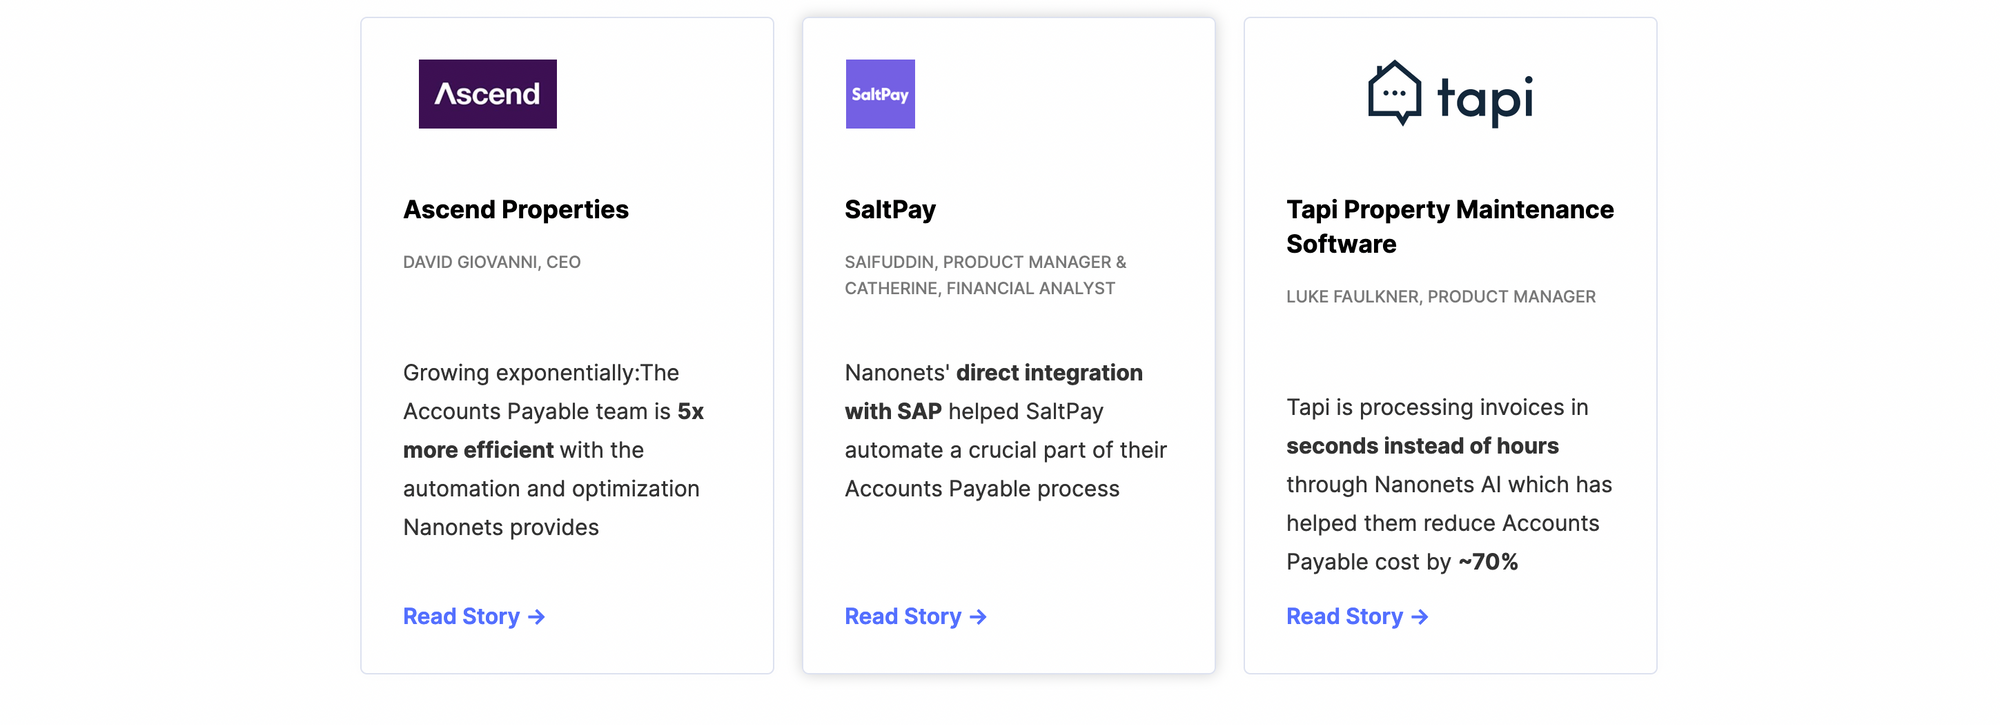 نظرات مشتریان نانو شبکه از Ascend، SaltPay و tapi